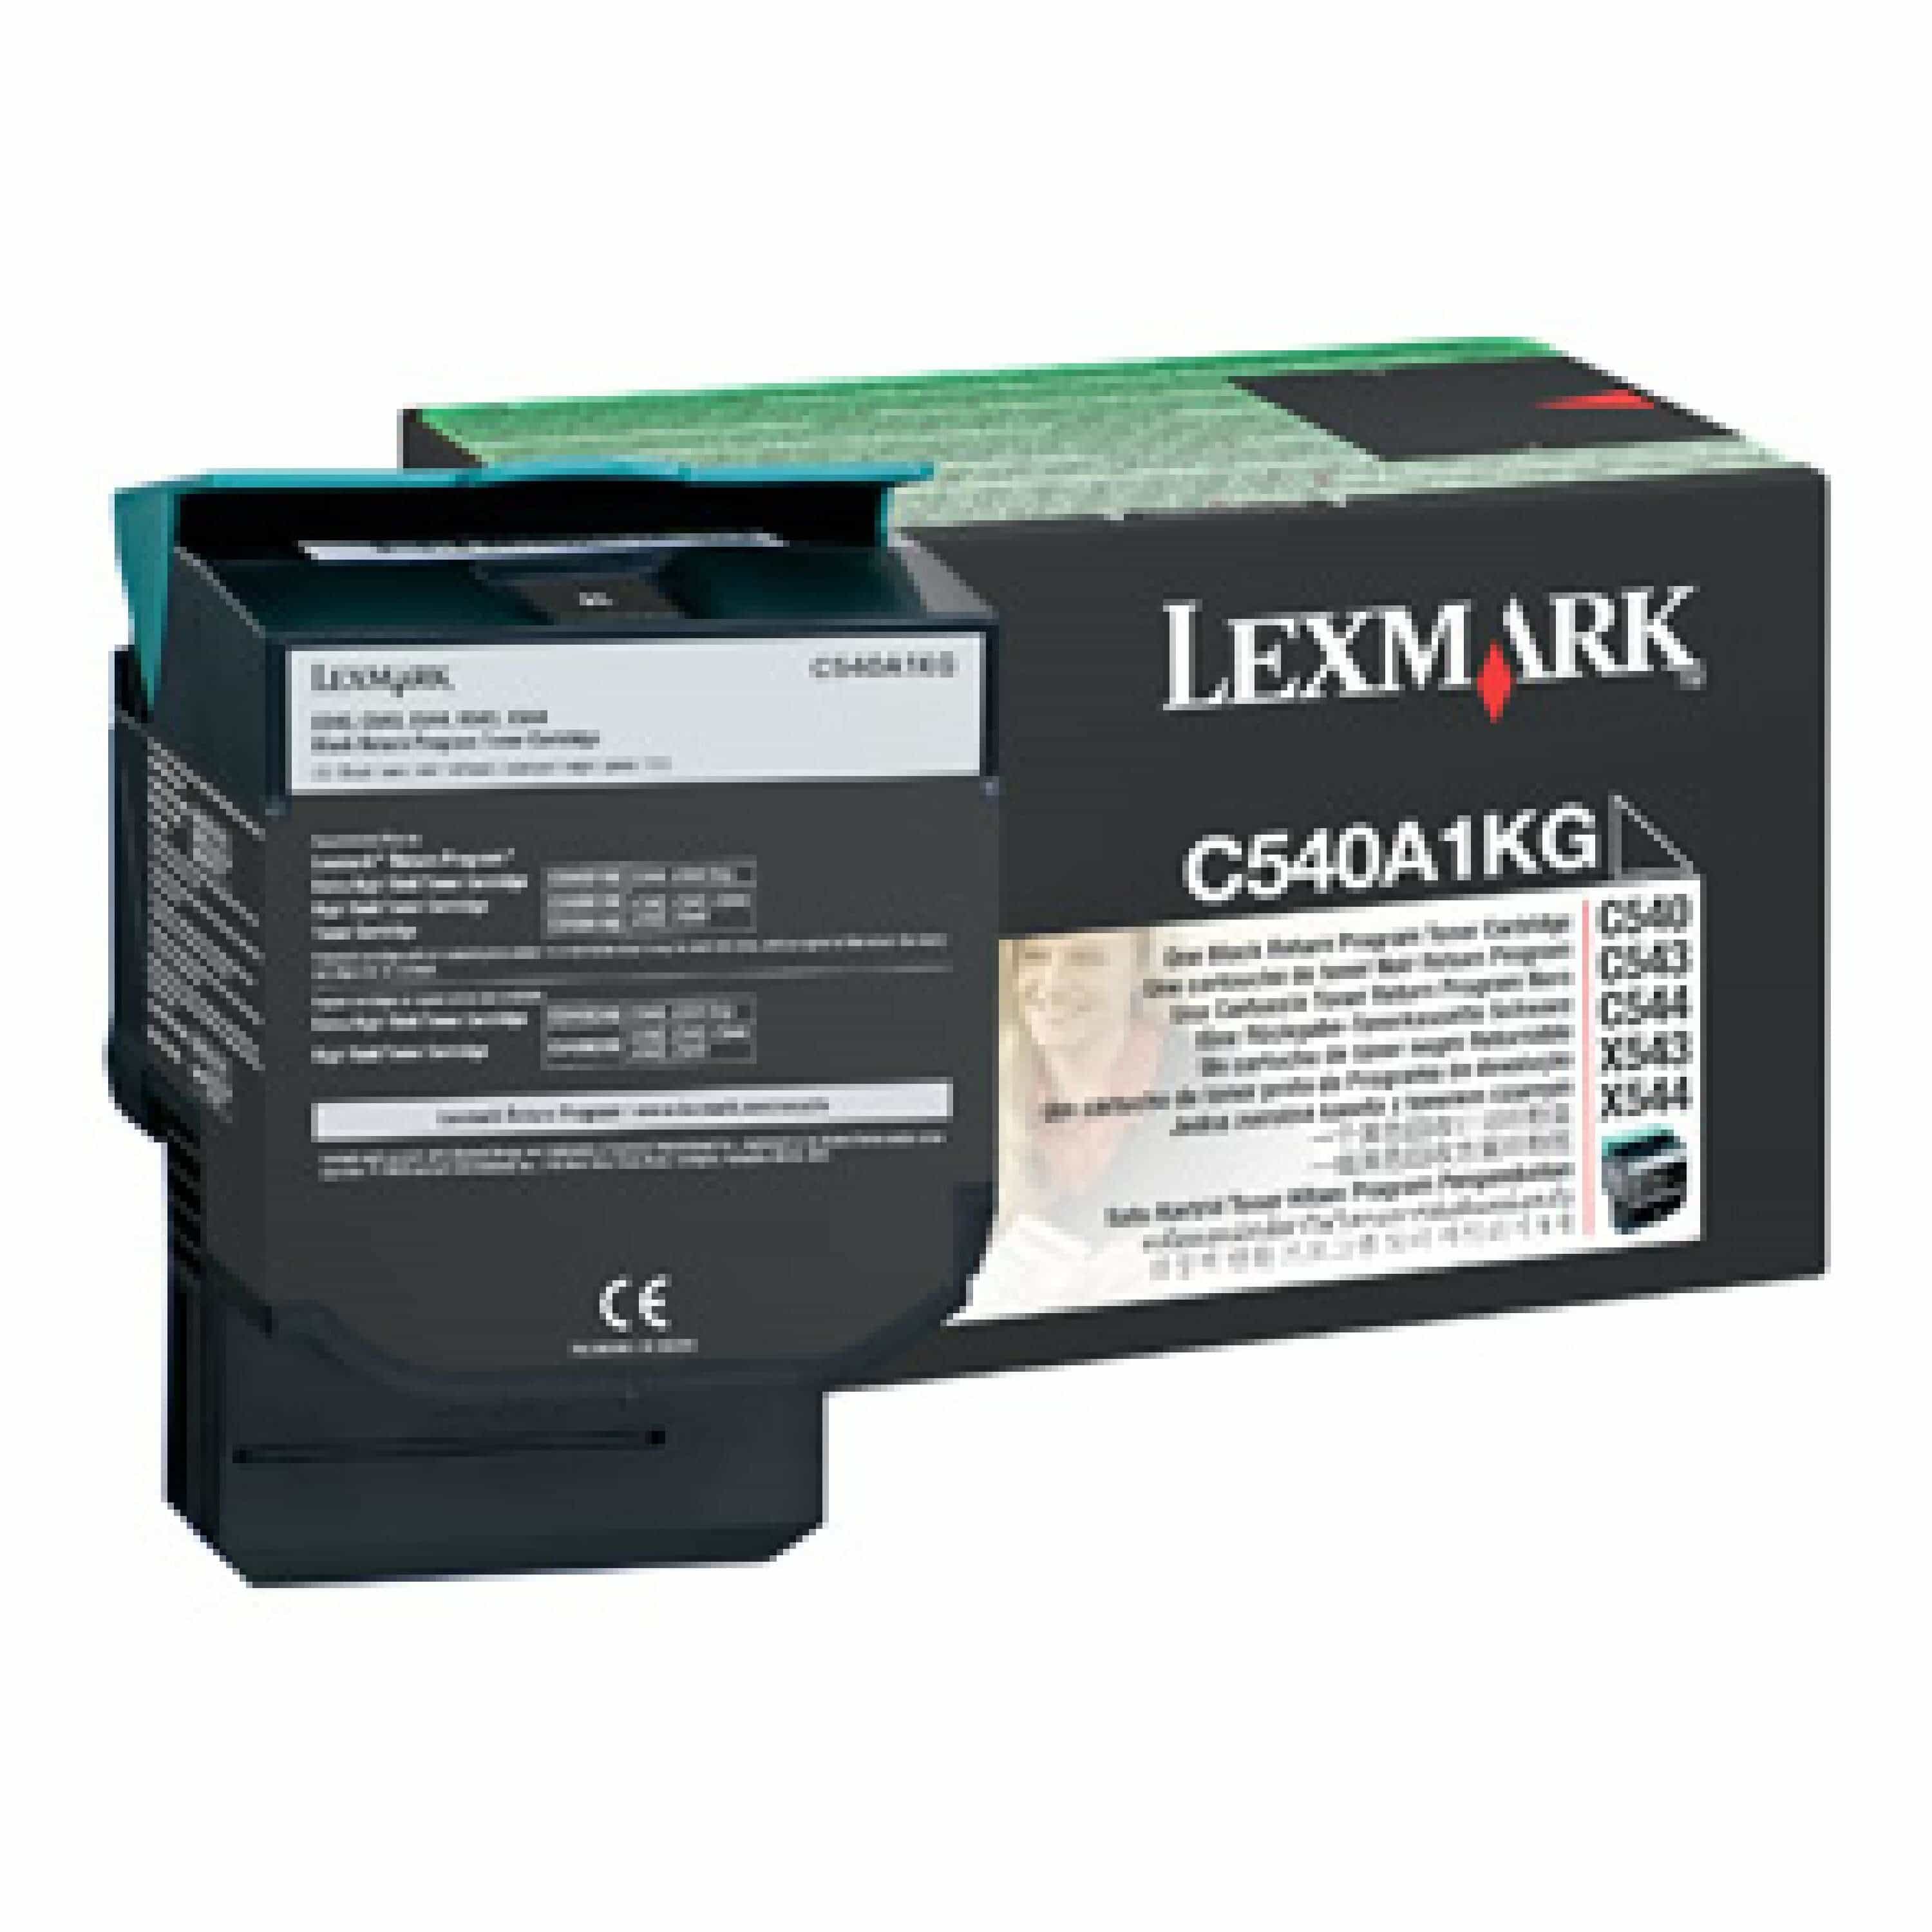 Original Toner Lexmark C540A1KG